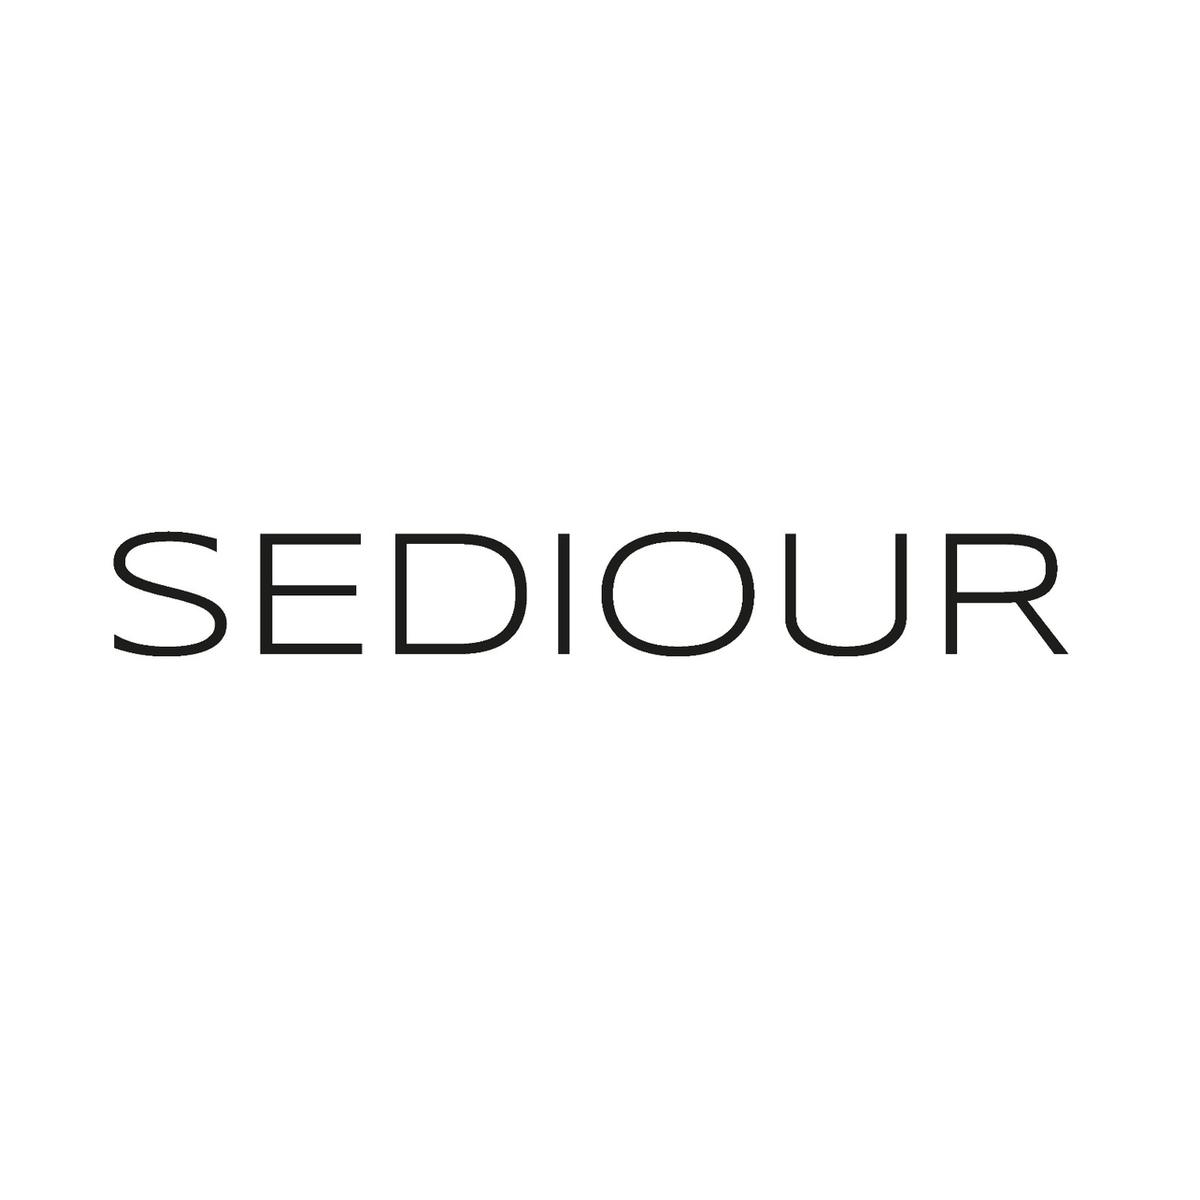 Sediour- 세디어